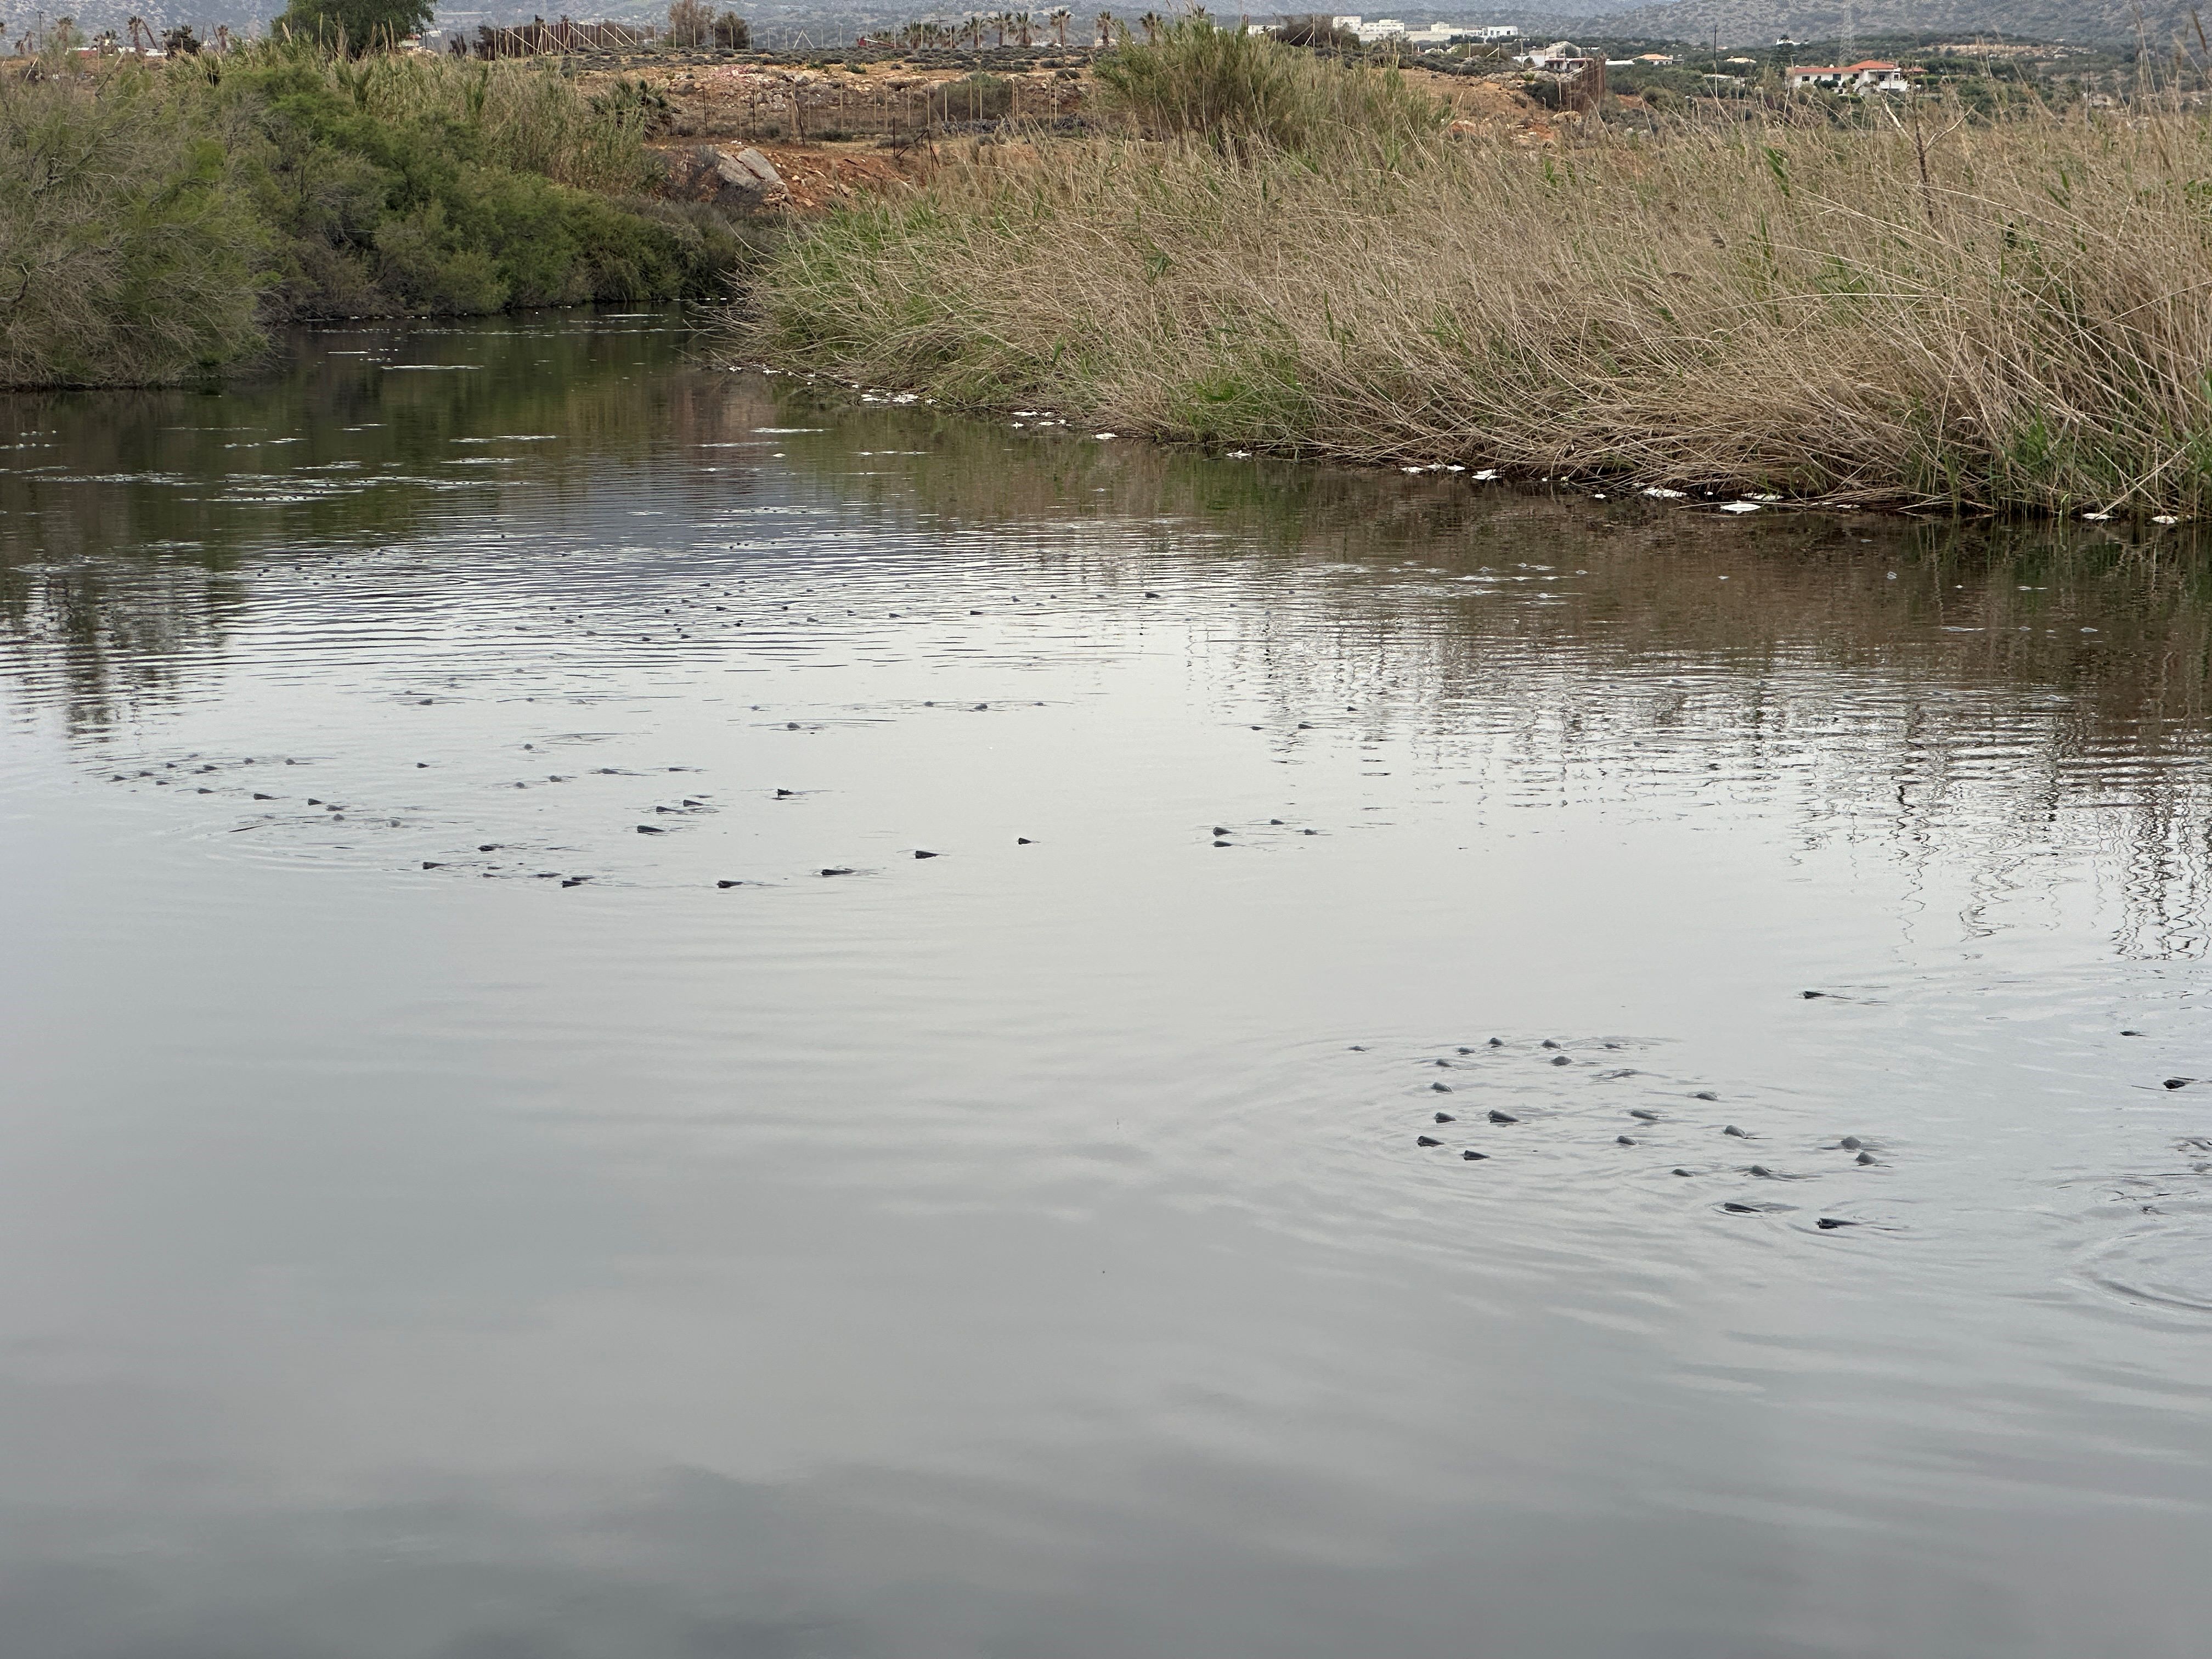 Κεφαλόπουλα στις εκβολές του Αποσελέμη που βγάζουν τα κεφάλια τους έξω από το νερό στην προσπάθειά τους να αναπνεύσουν